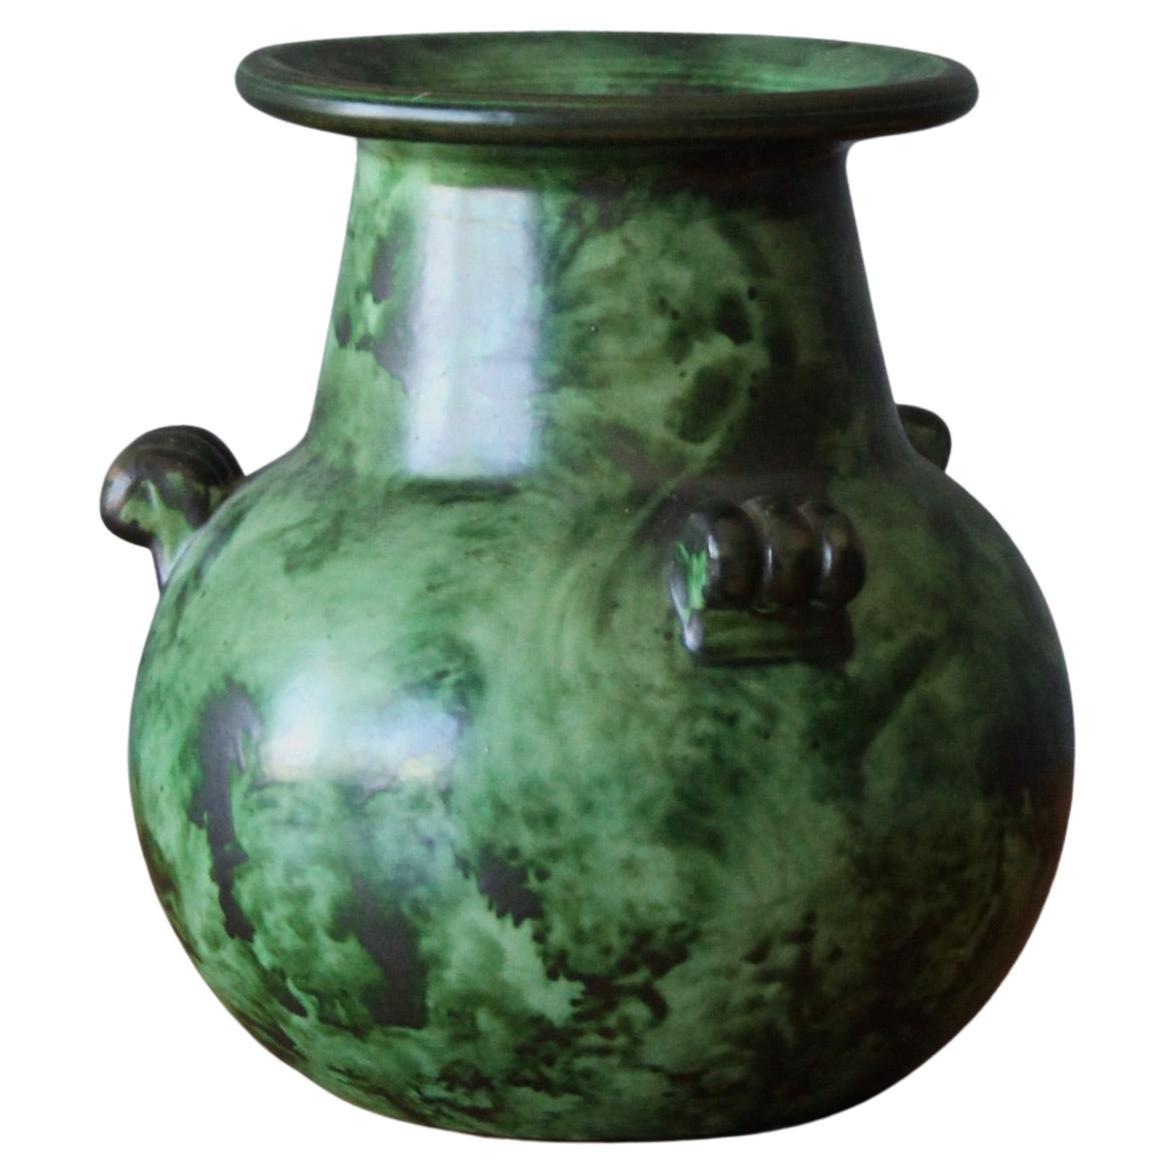 Erik Mornils, for Nittsjö, Green Ceramic Vase, Sweden, 1940s